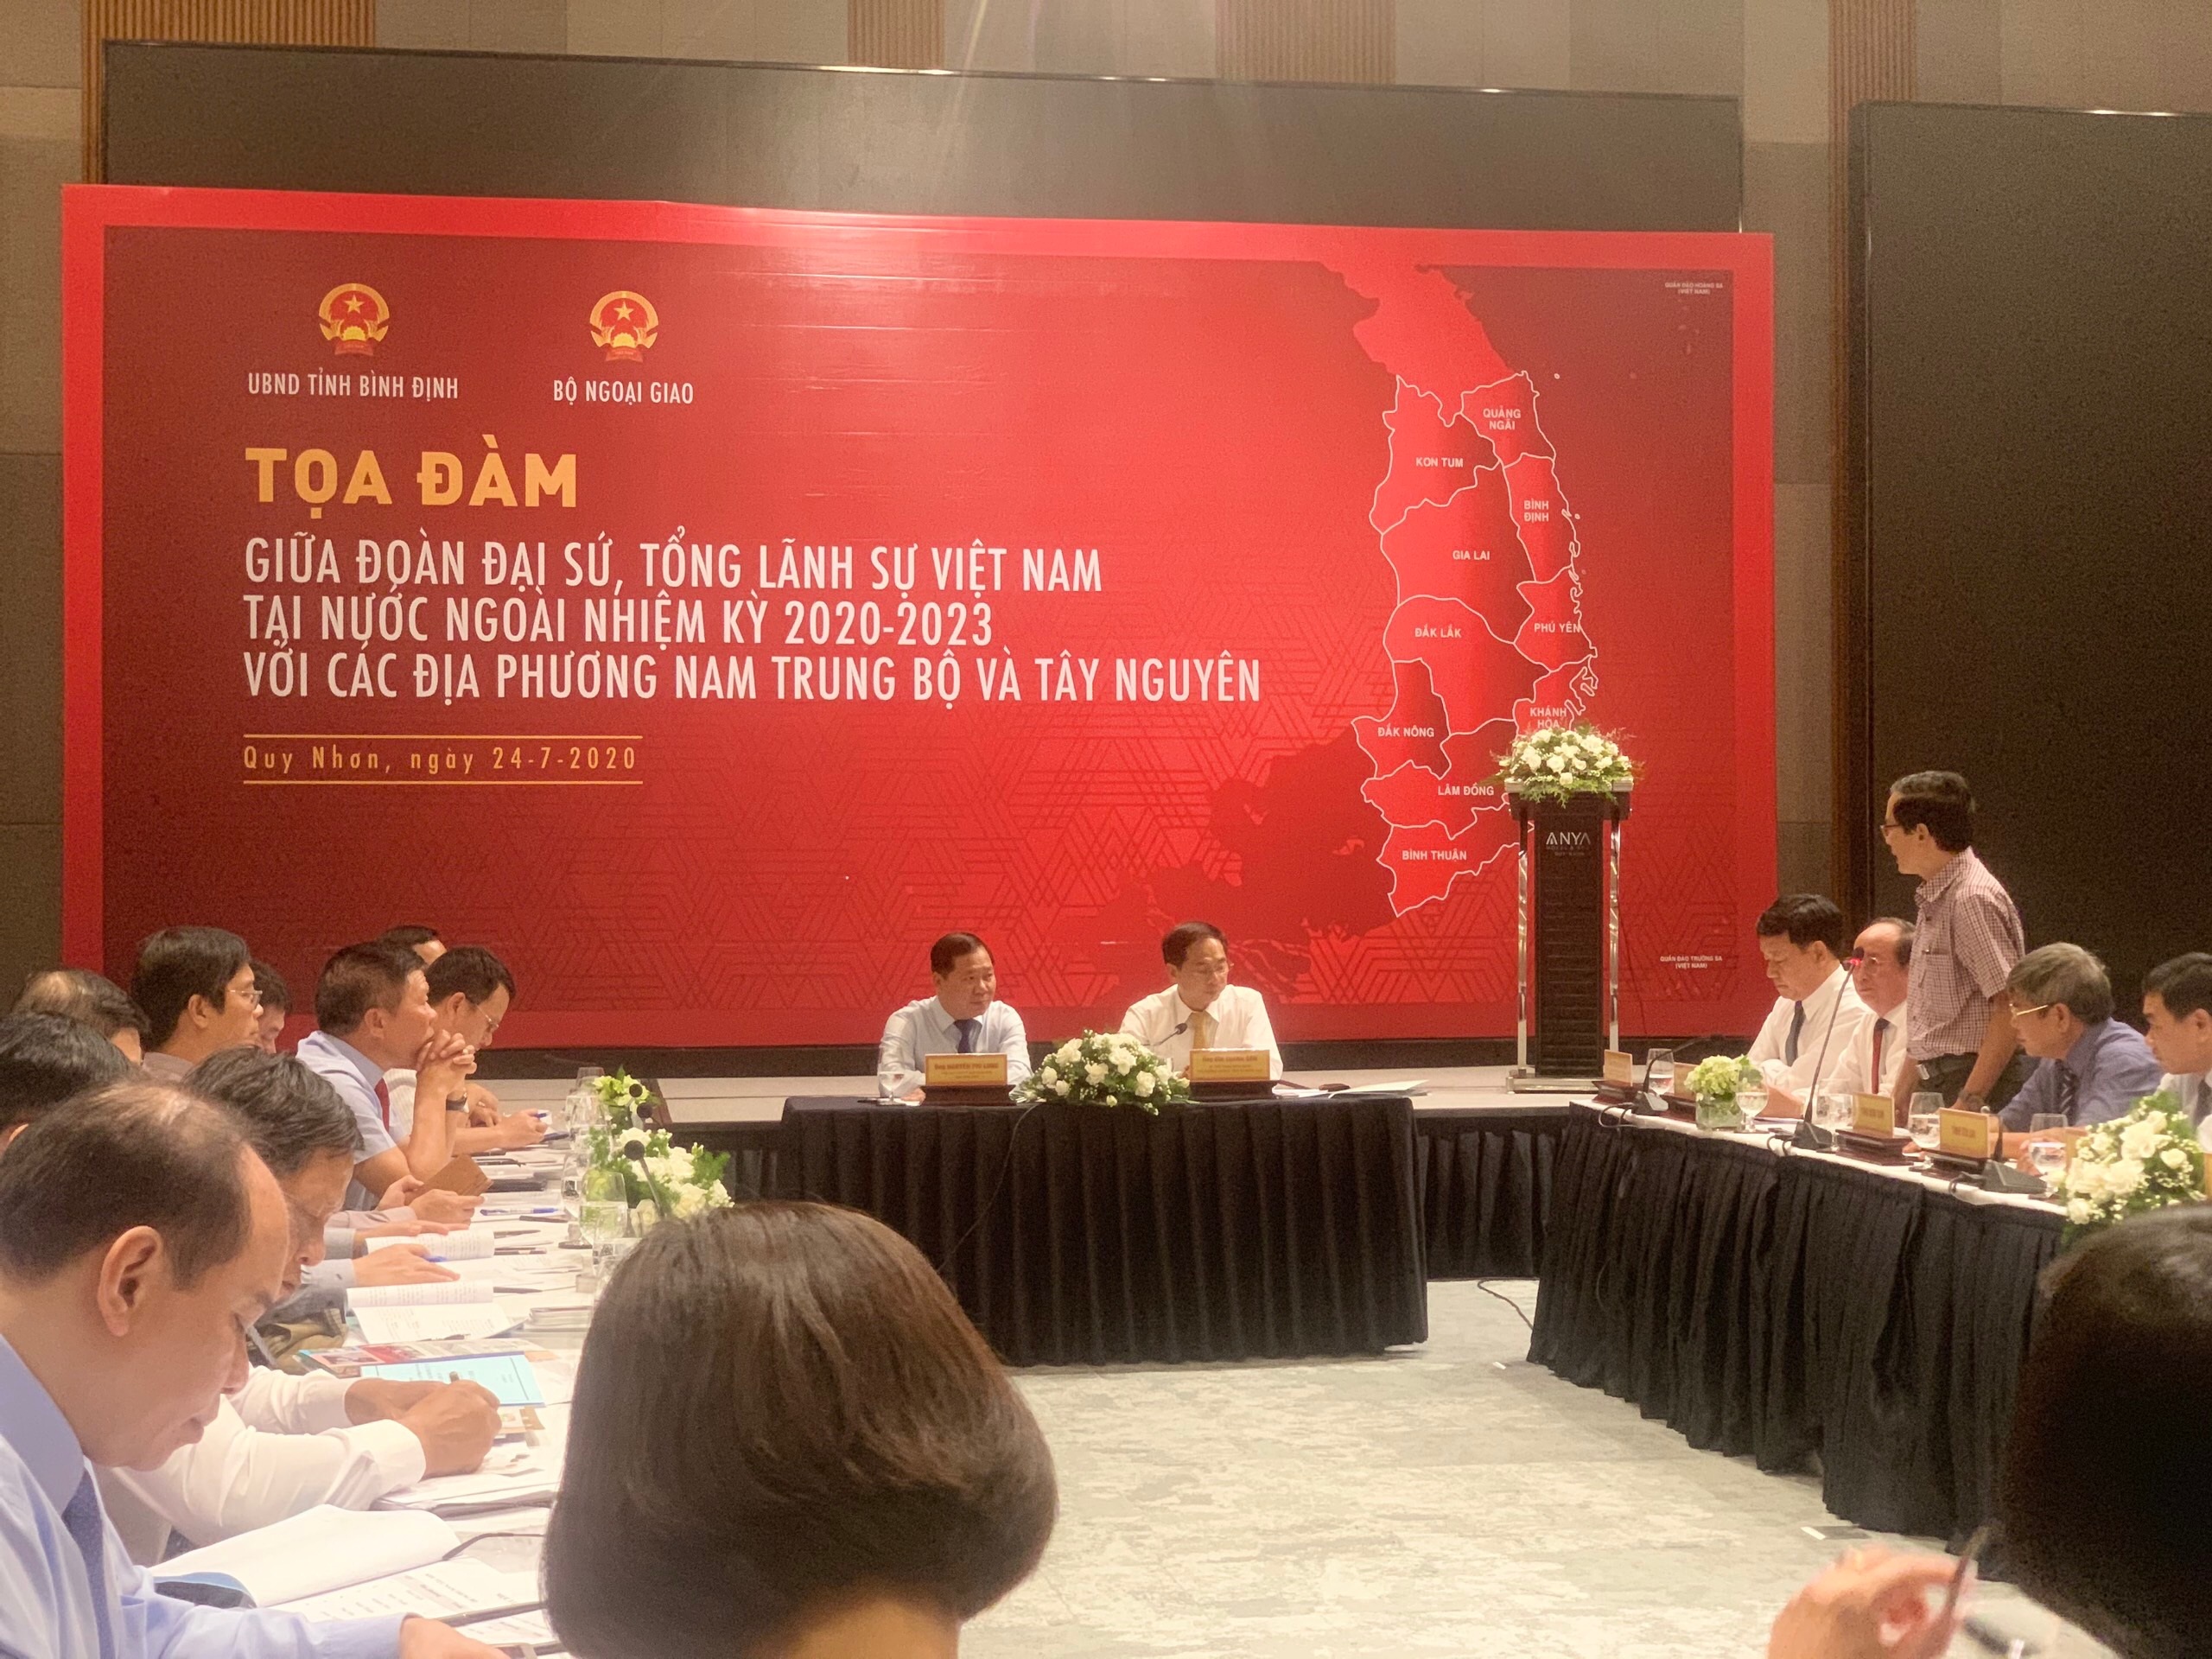 Tỉnh Quảng Ngãi tham dự Tọa đàm với đoàn Đại sứ, Tổng lãnh sự Việt Nam tại nước ngoài nhiệm kỳ 2020 - 2023